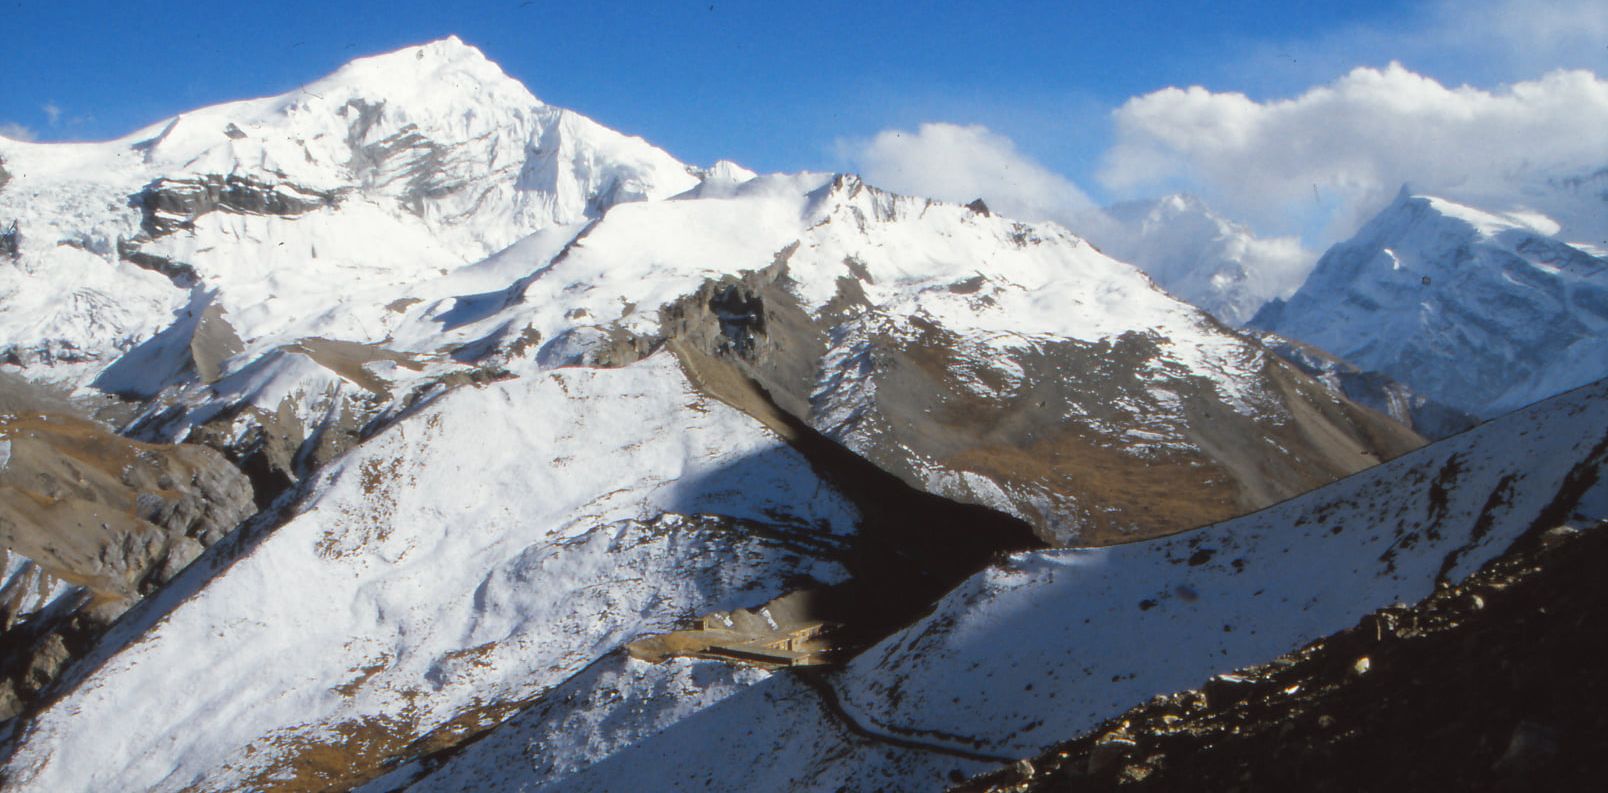 Chulu Peak from above High Camp